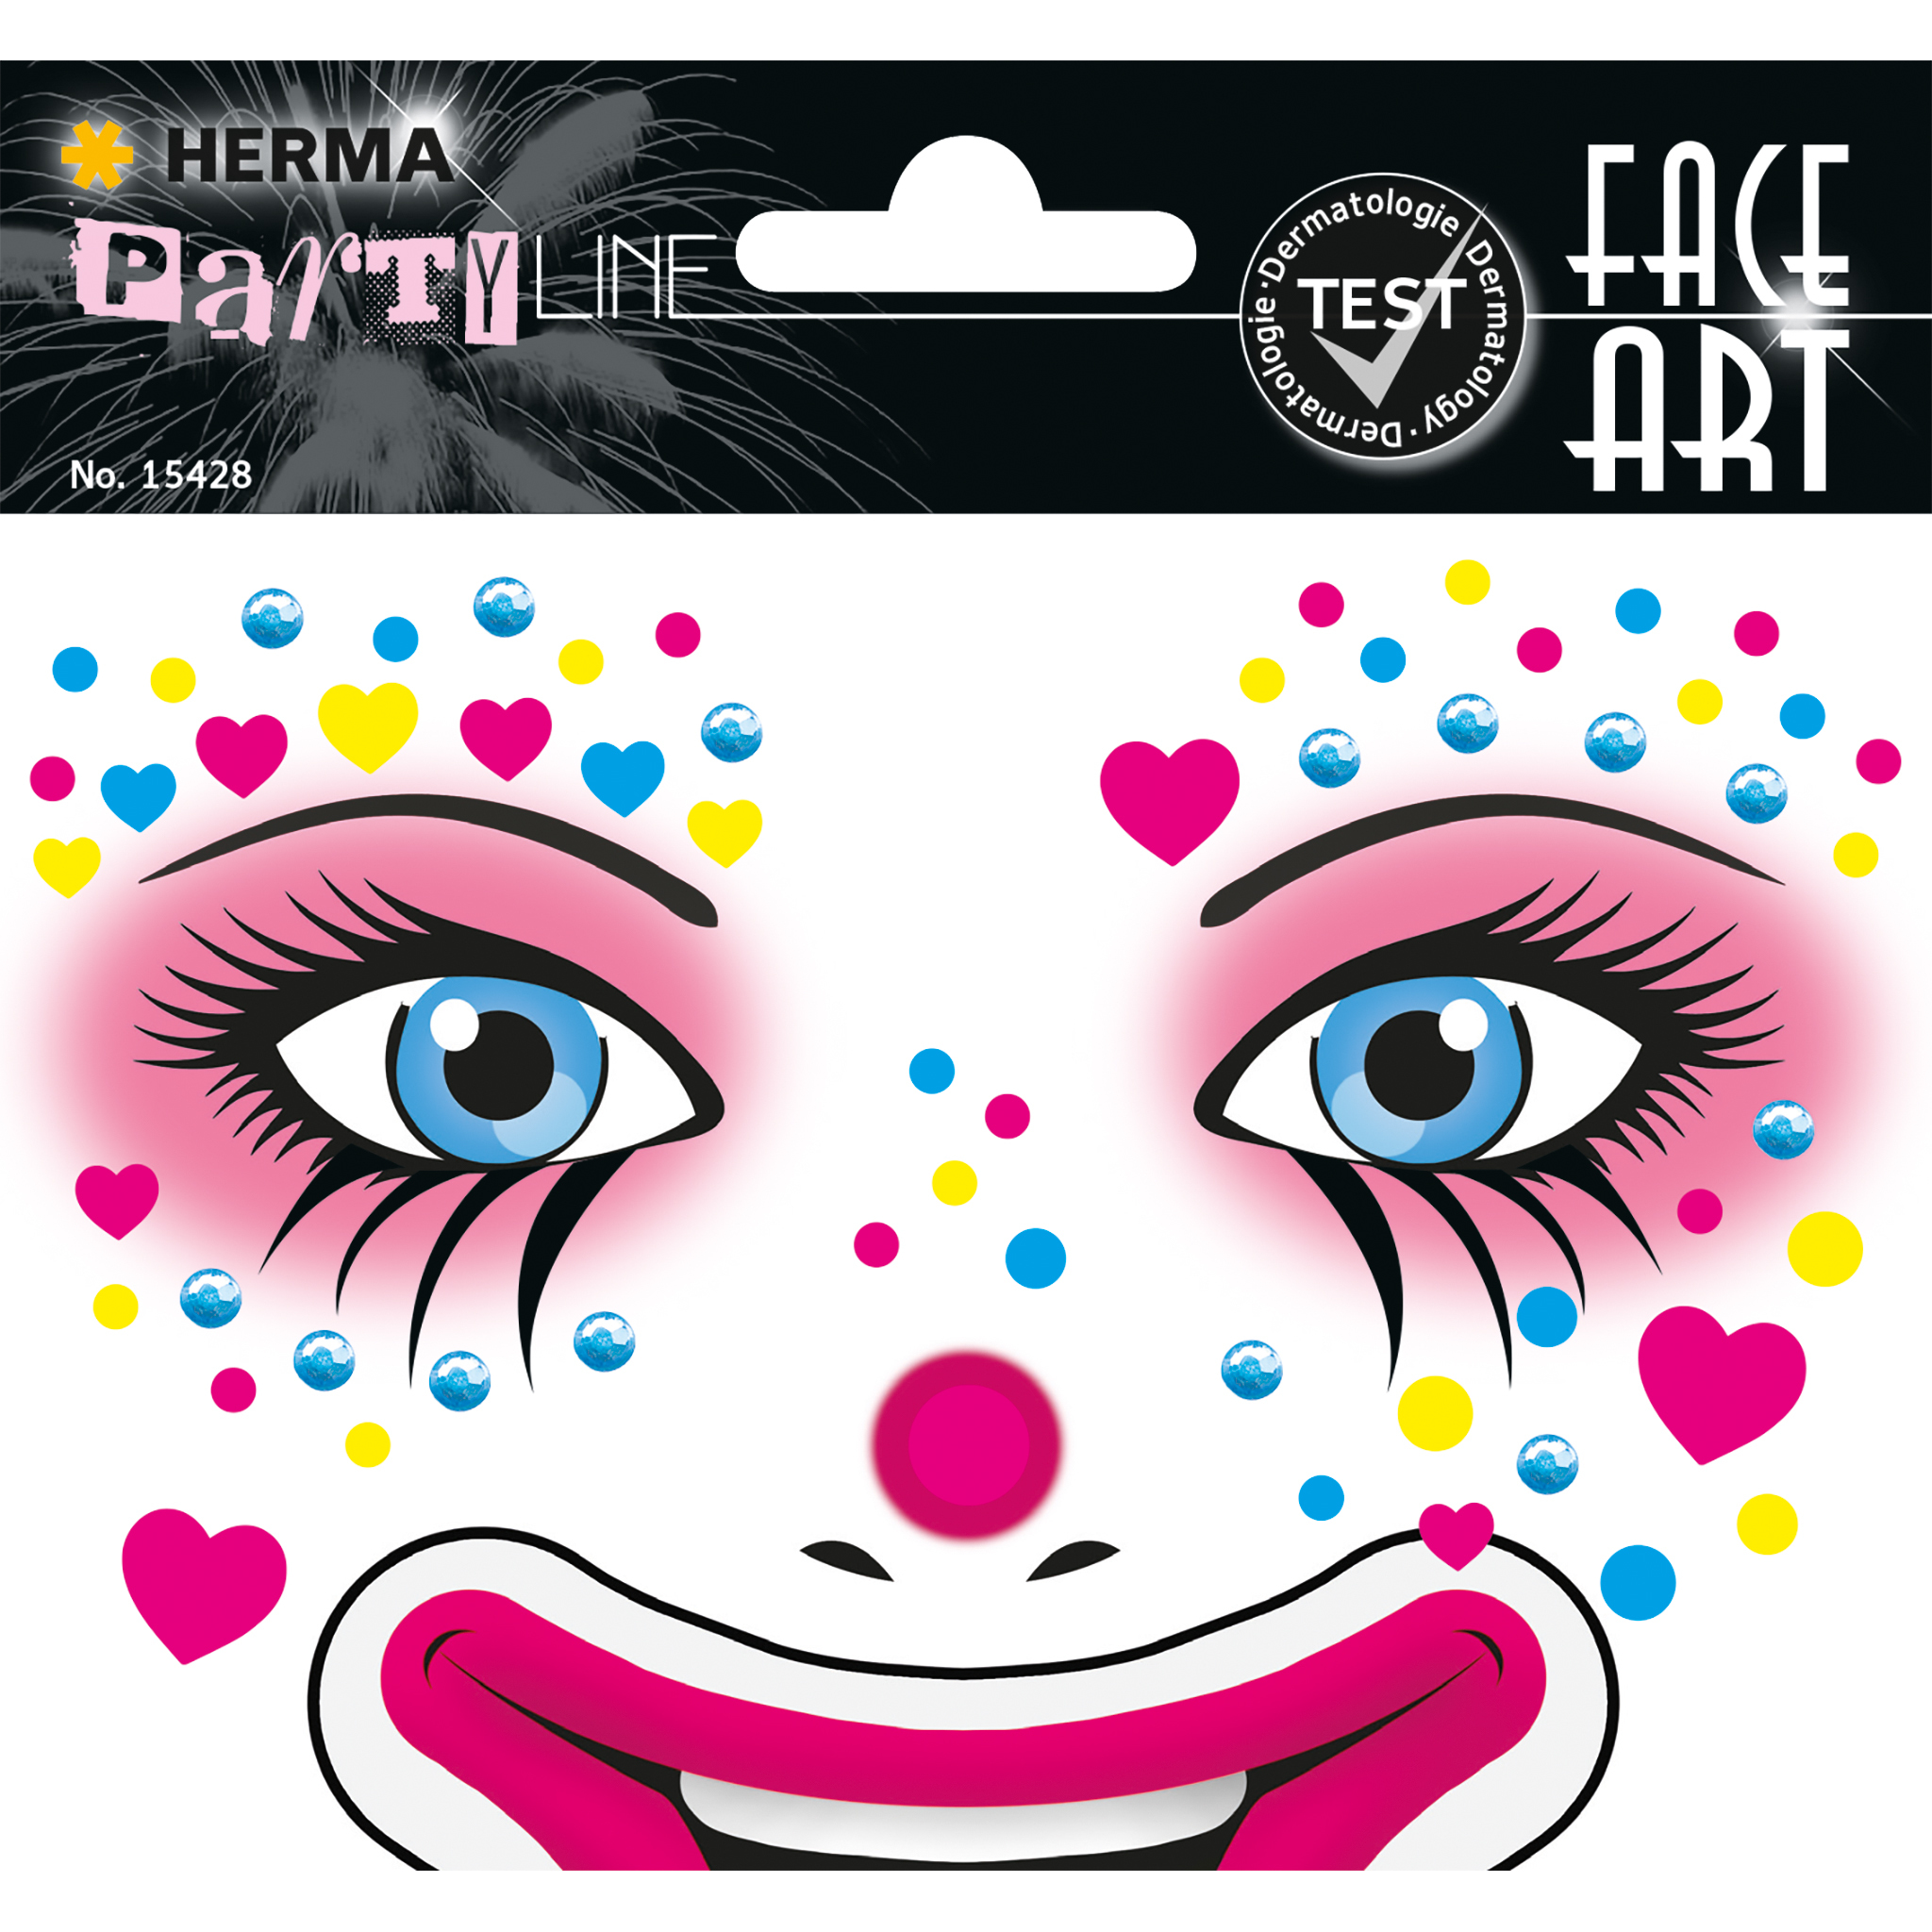 HERMA Face Art Sticker - Entfernbar - Sichtverpackung - 1 Stück(e)